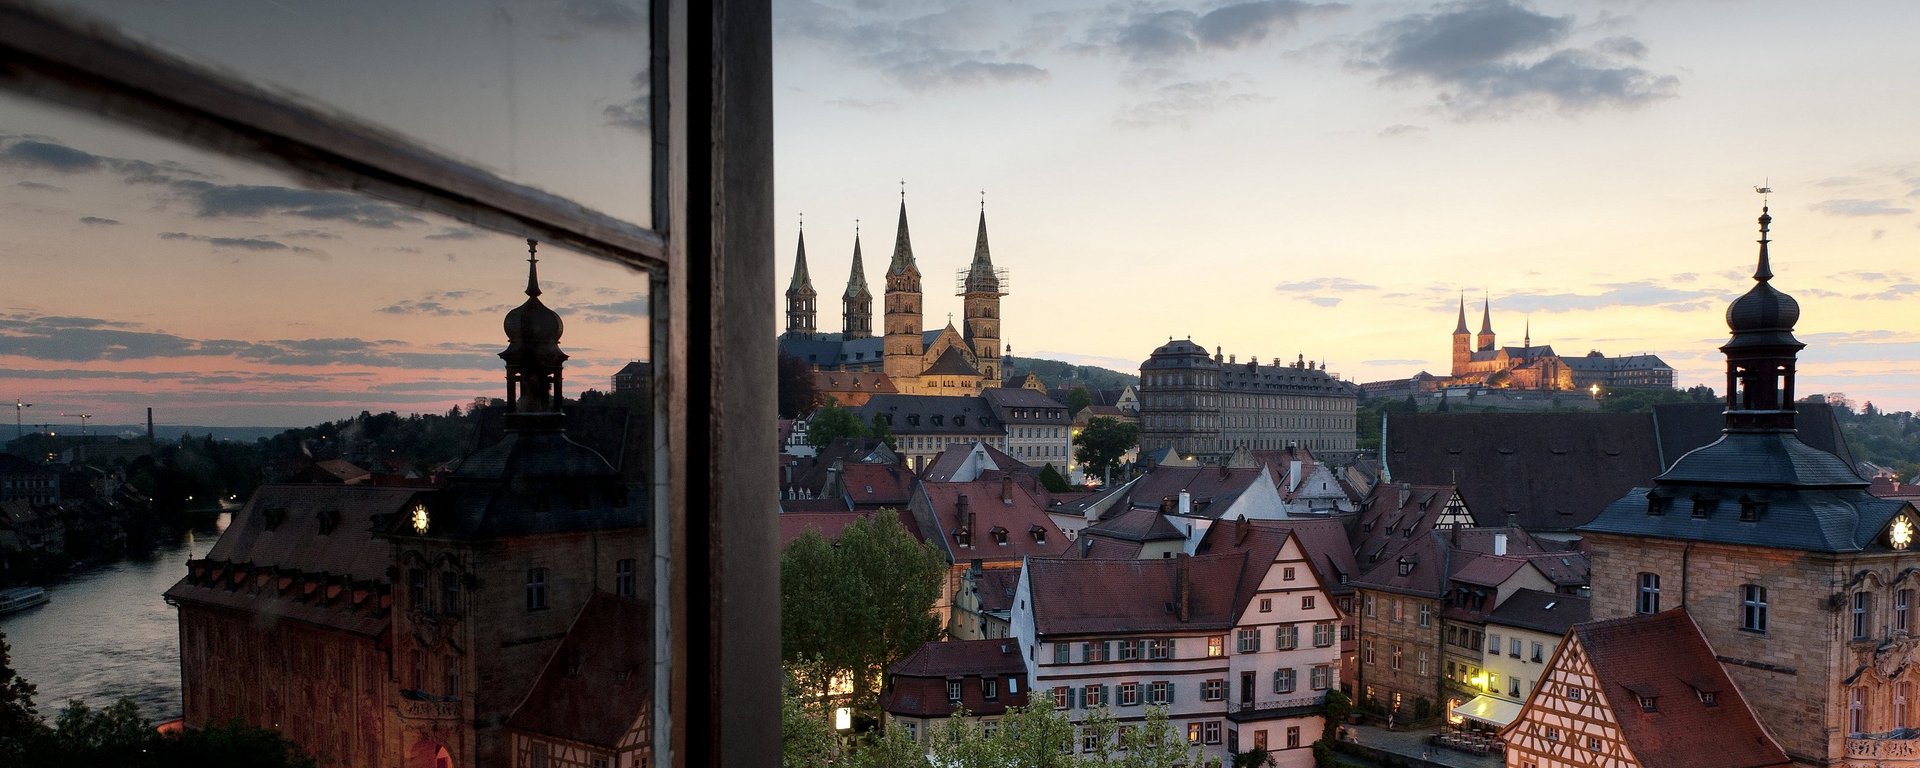 Weltkulturerbe Altstadt Bamberg in Franken